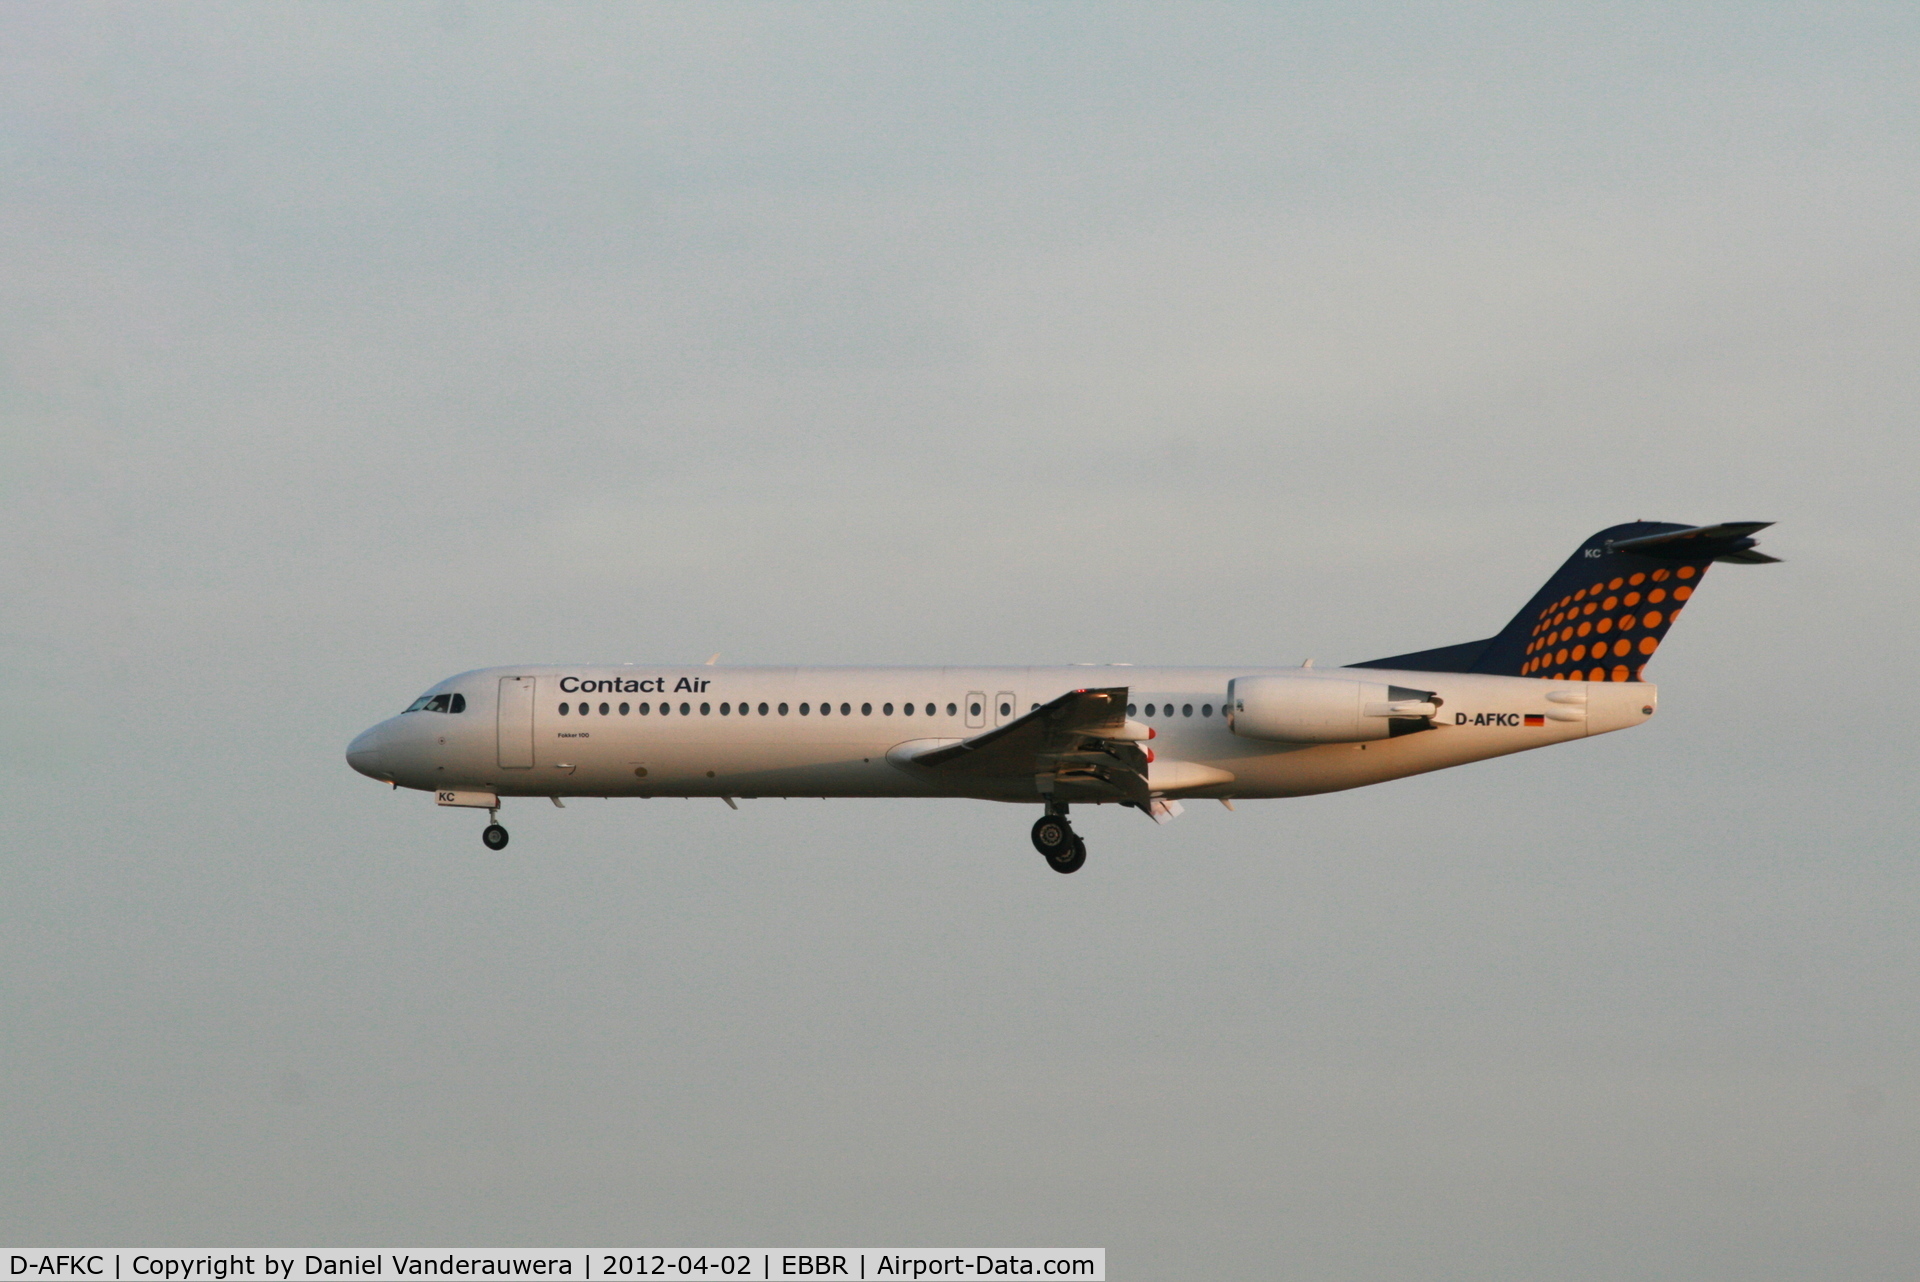 D-AFKC, 1996 Fokker 100 (F-28-0100) C/N 11496, Flight LH3354 is descending to RWY 25L